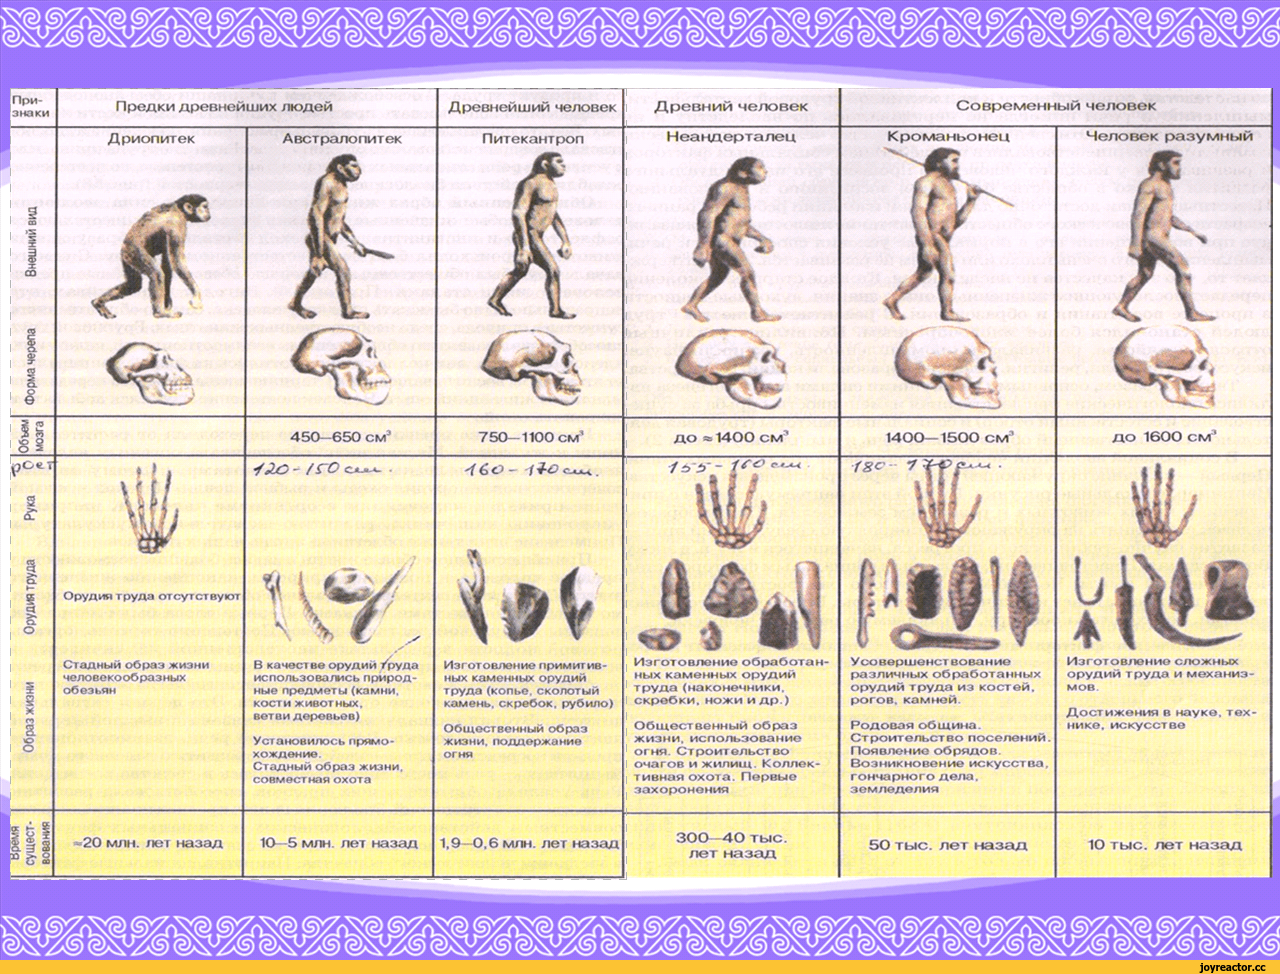 Примеры древнейших людей. Стадии эволюции человека таблица дриопитек. Таблица Эволюция человека 11 класс дриопитеки. Этапы эволюции человека таблица дриопитек. Этапы эволюции предков человека таблица.